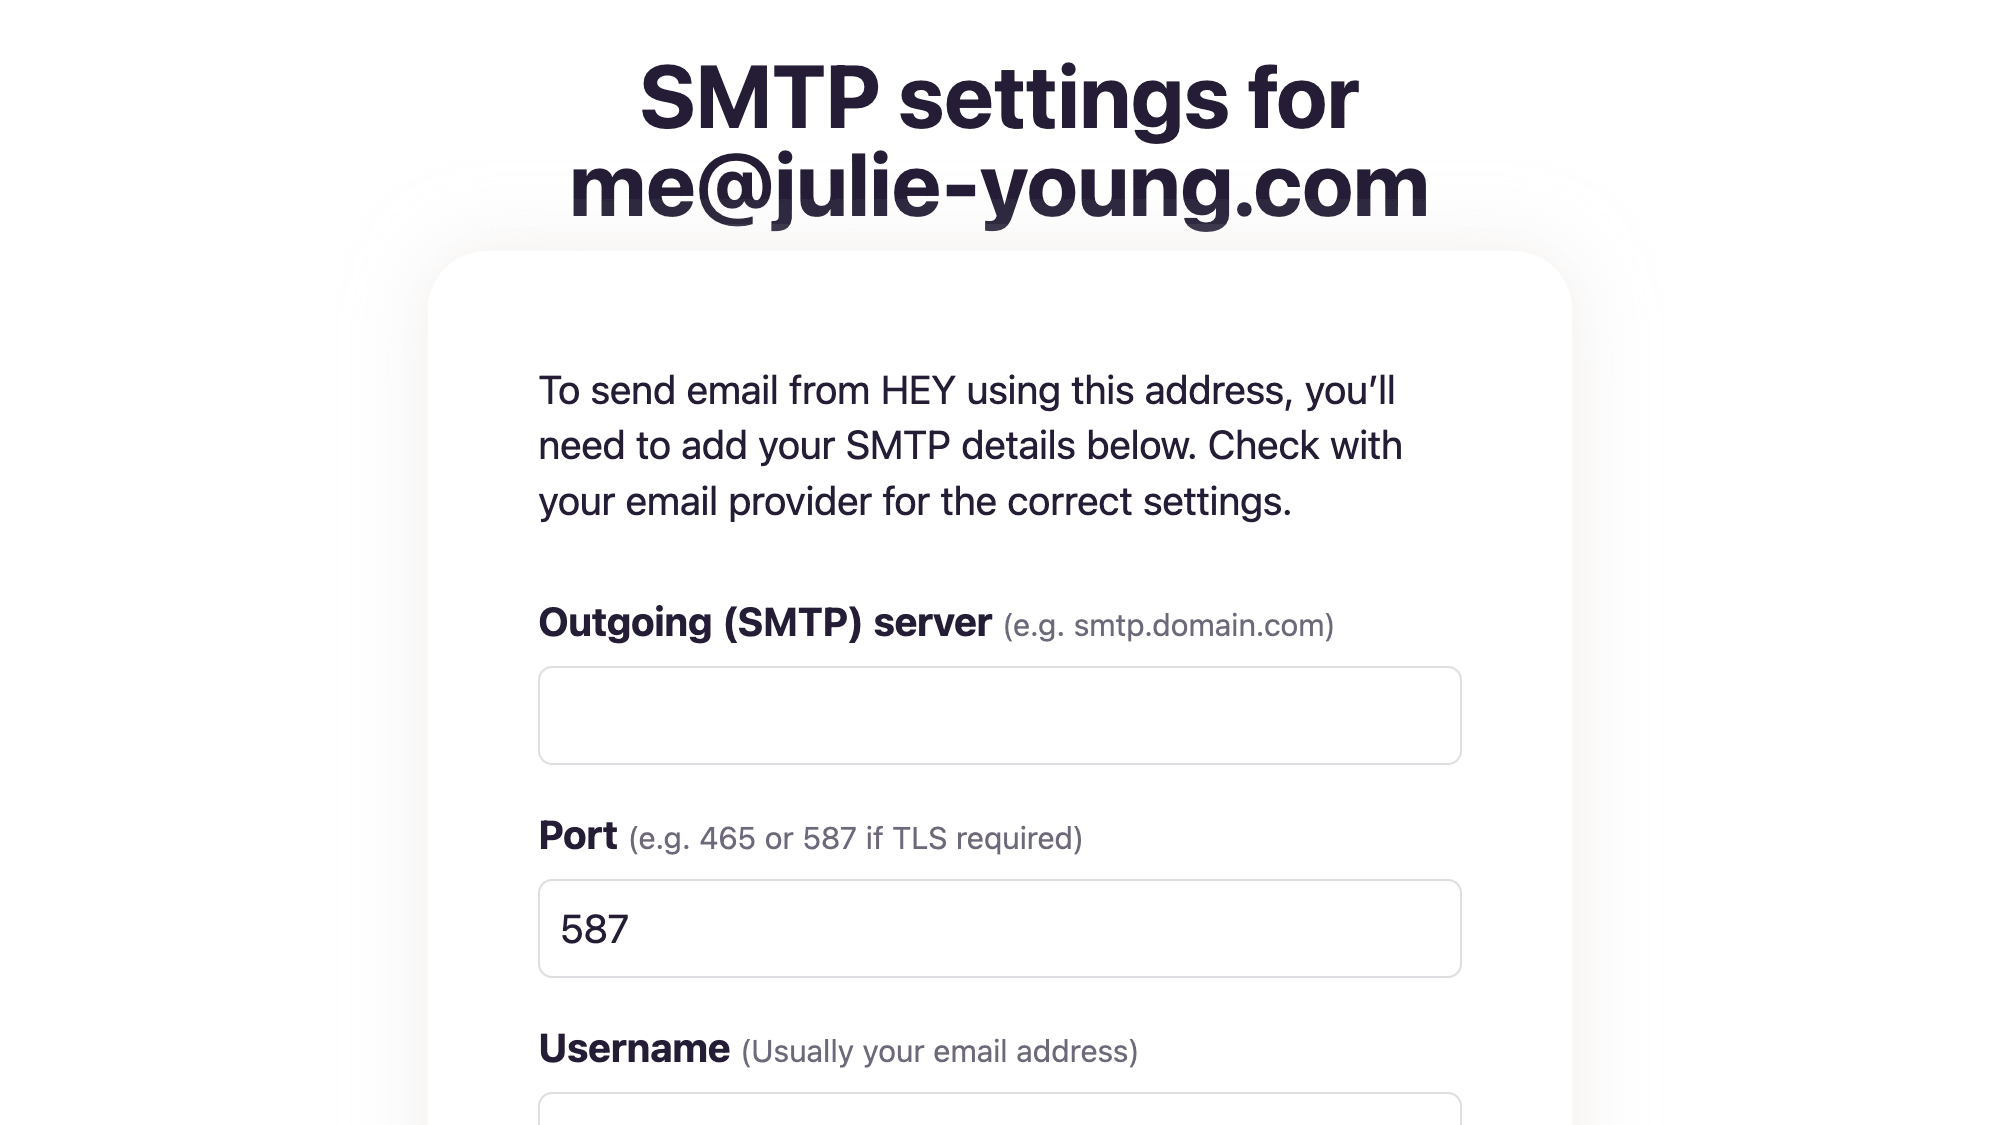 Send from an external email address using SMTP